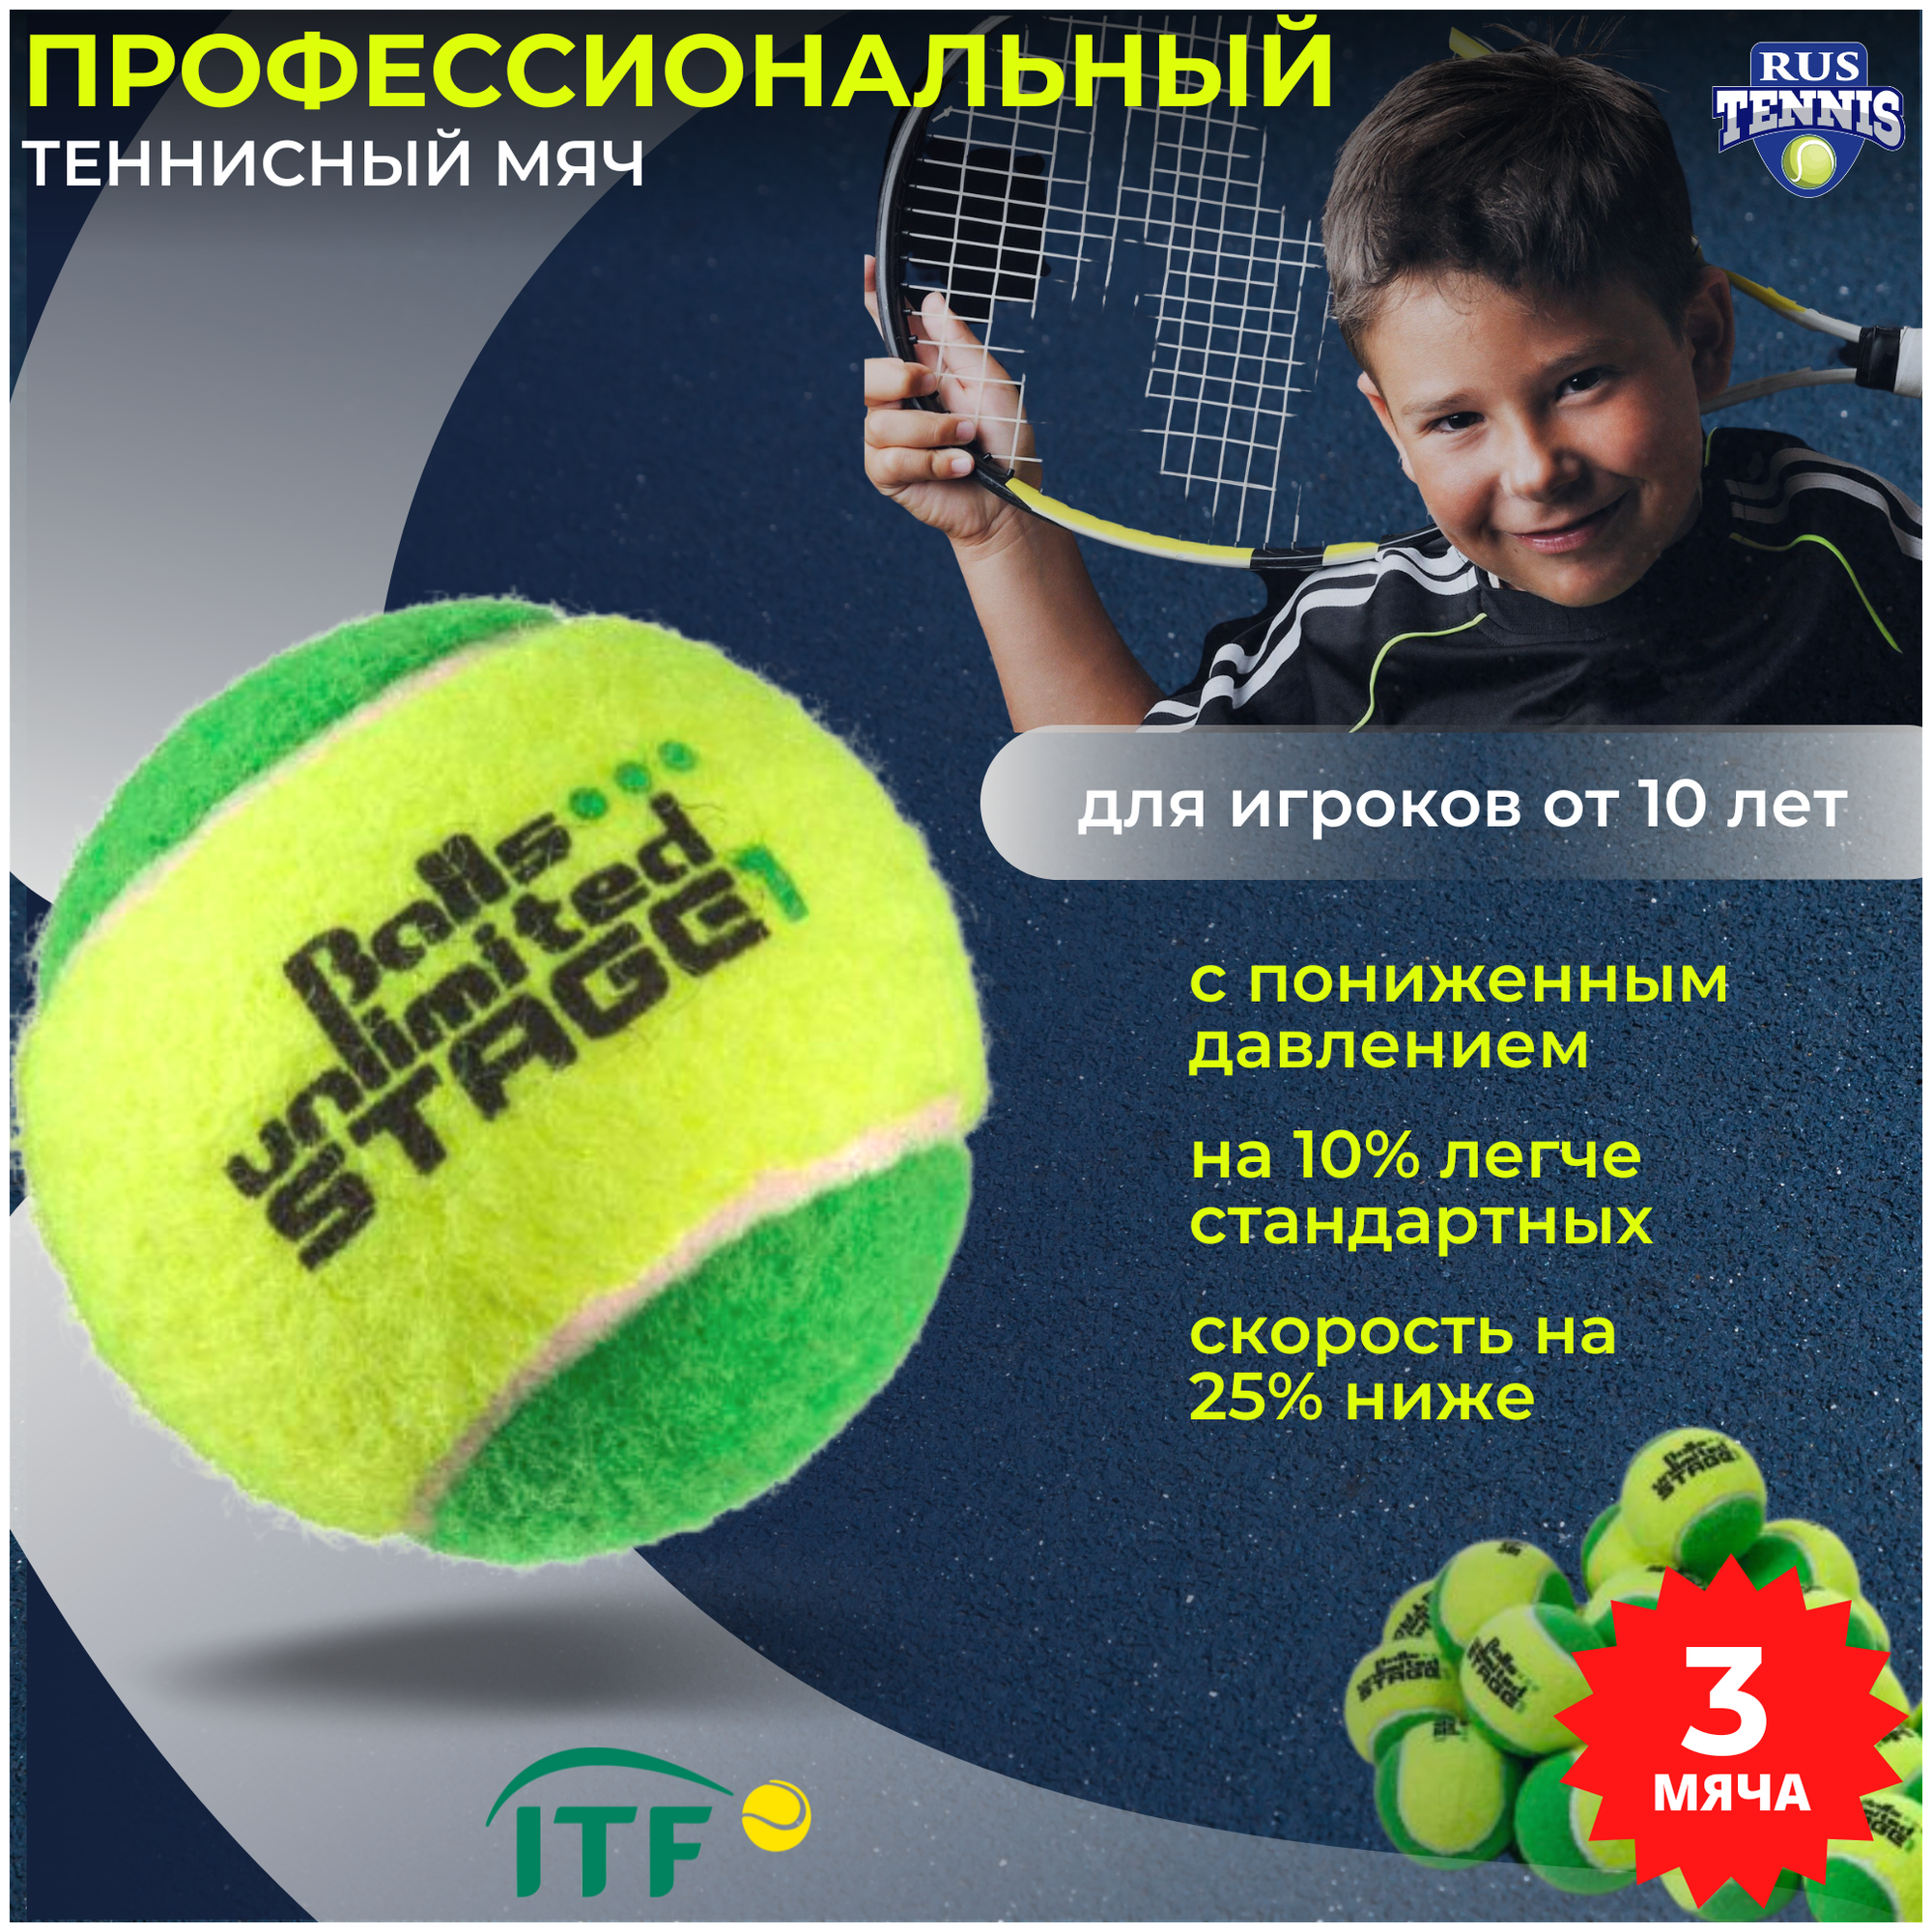 Теннисный мяч Balls unlimited Stage 1, набор мячей 3 штуки, зеленый (уровень 1)